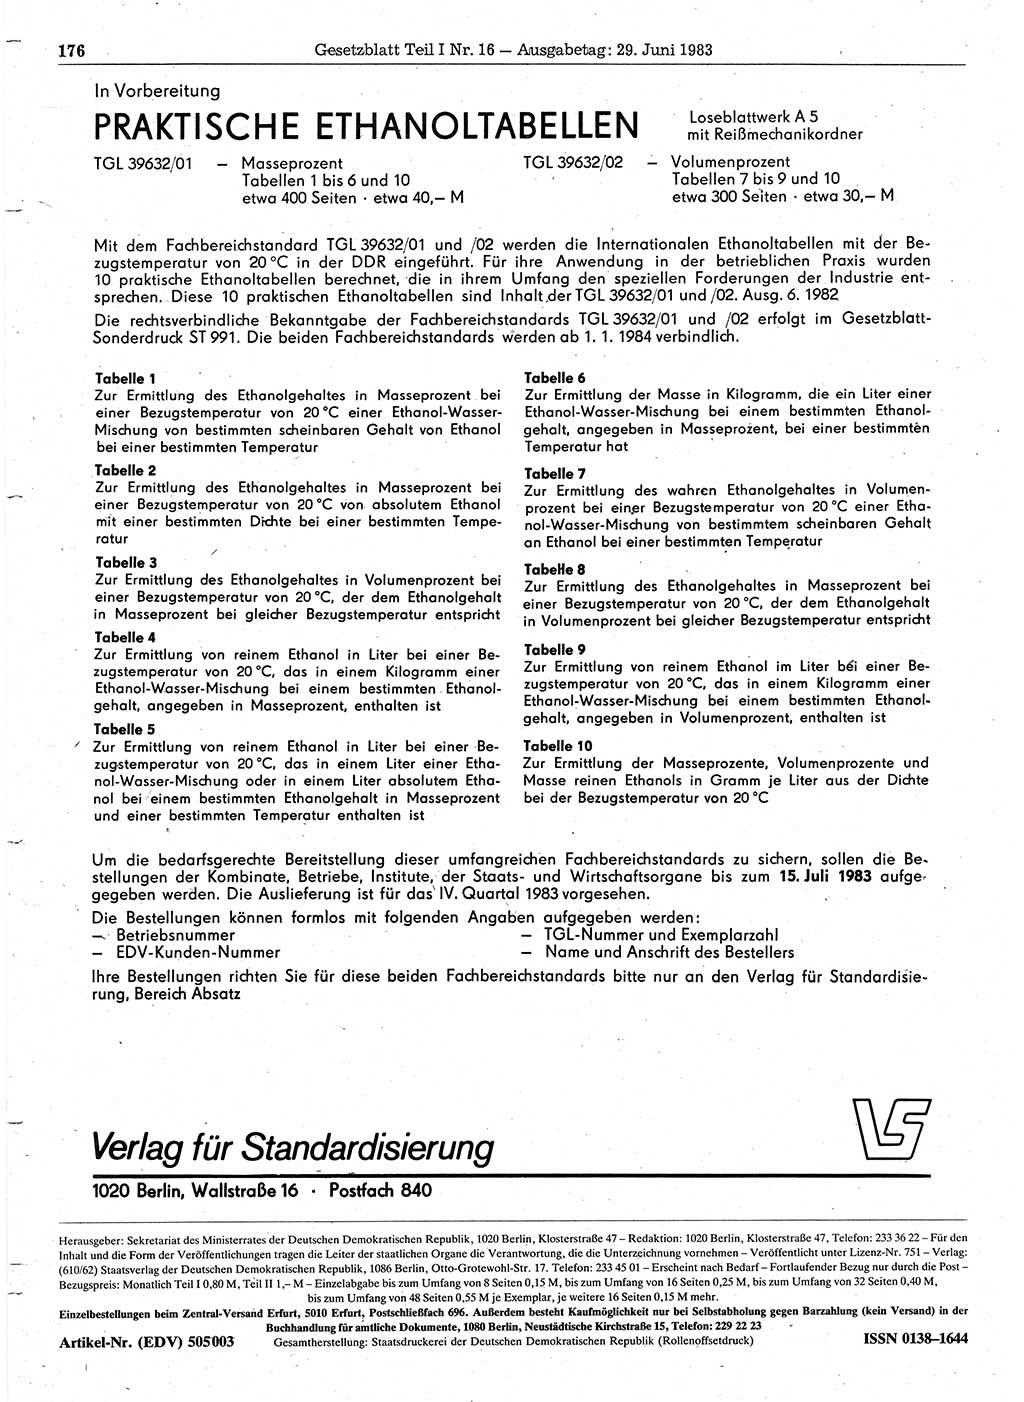 Gesetzblatt (GBl.) der Deutschen Demokratischen Republik (DDR) Teil Ⅰ 1983, Seite 176 (GBl. DDR Ⅰ 1983, S. 176)